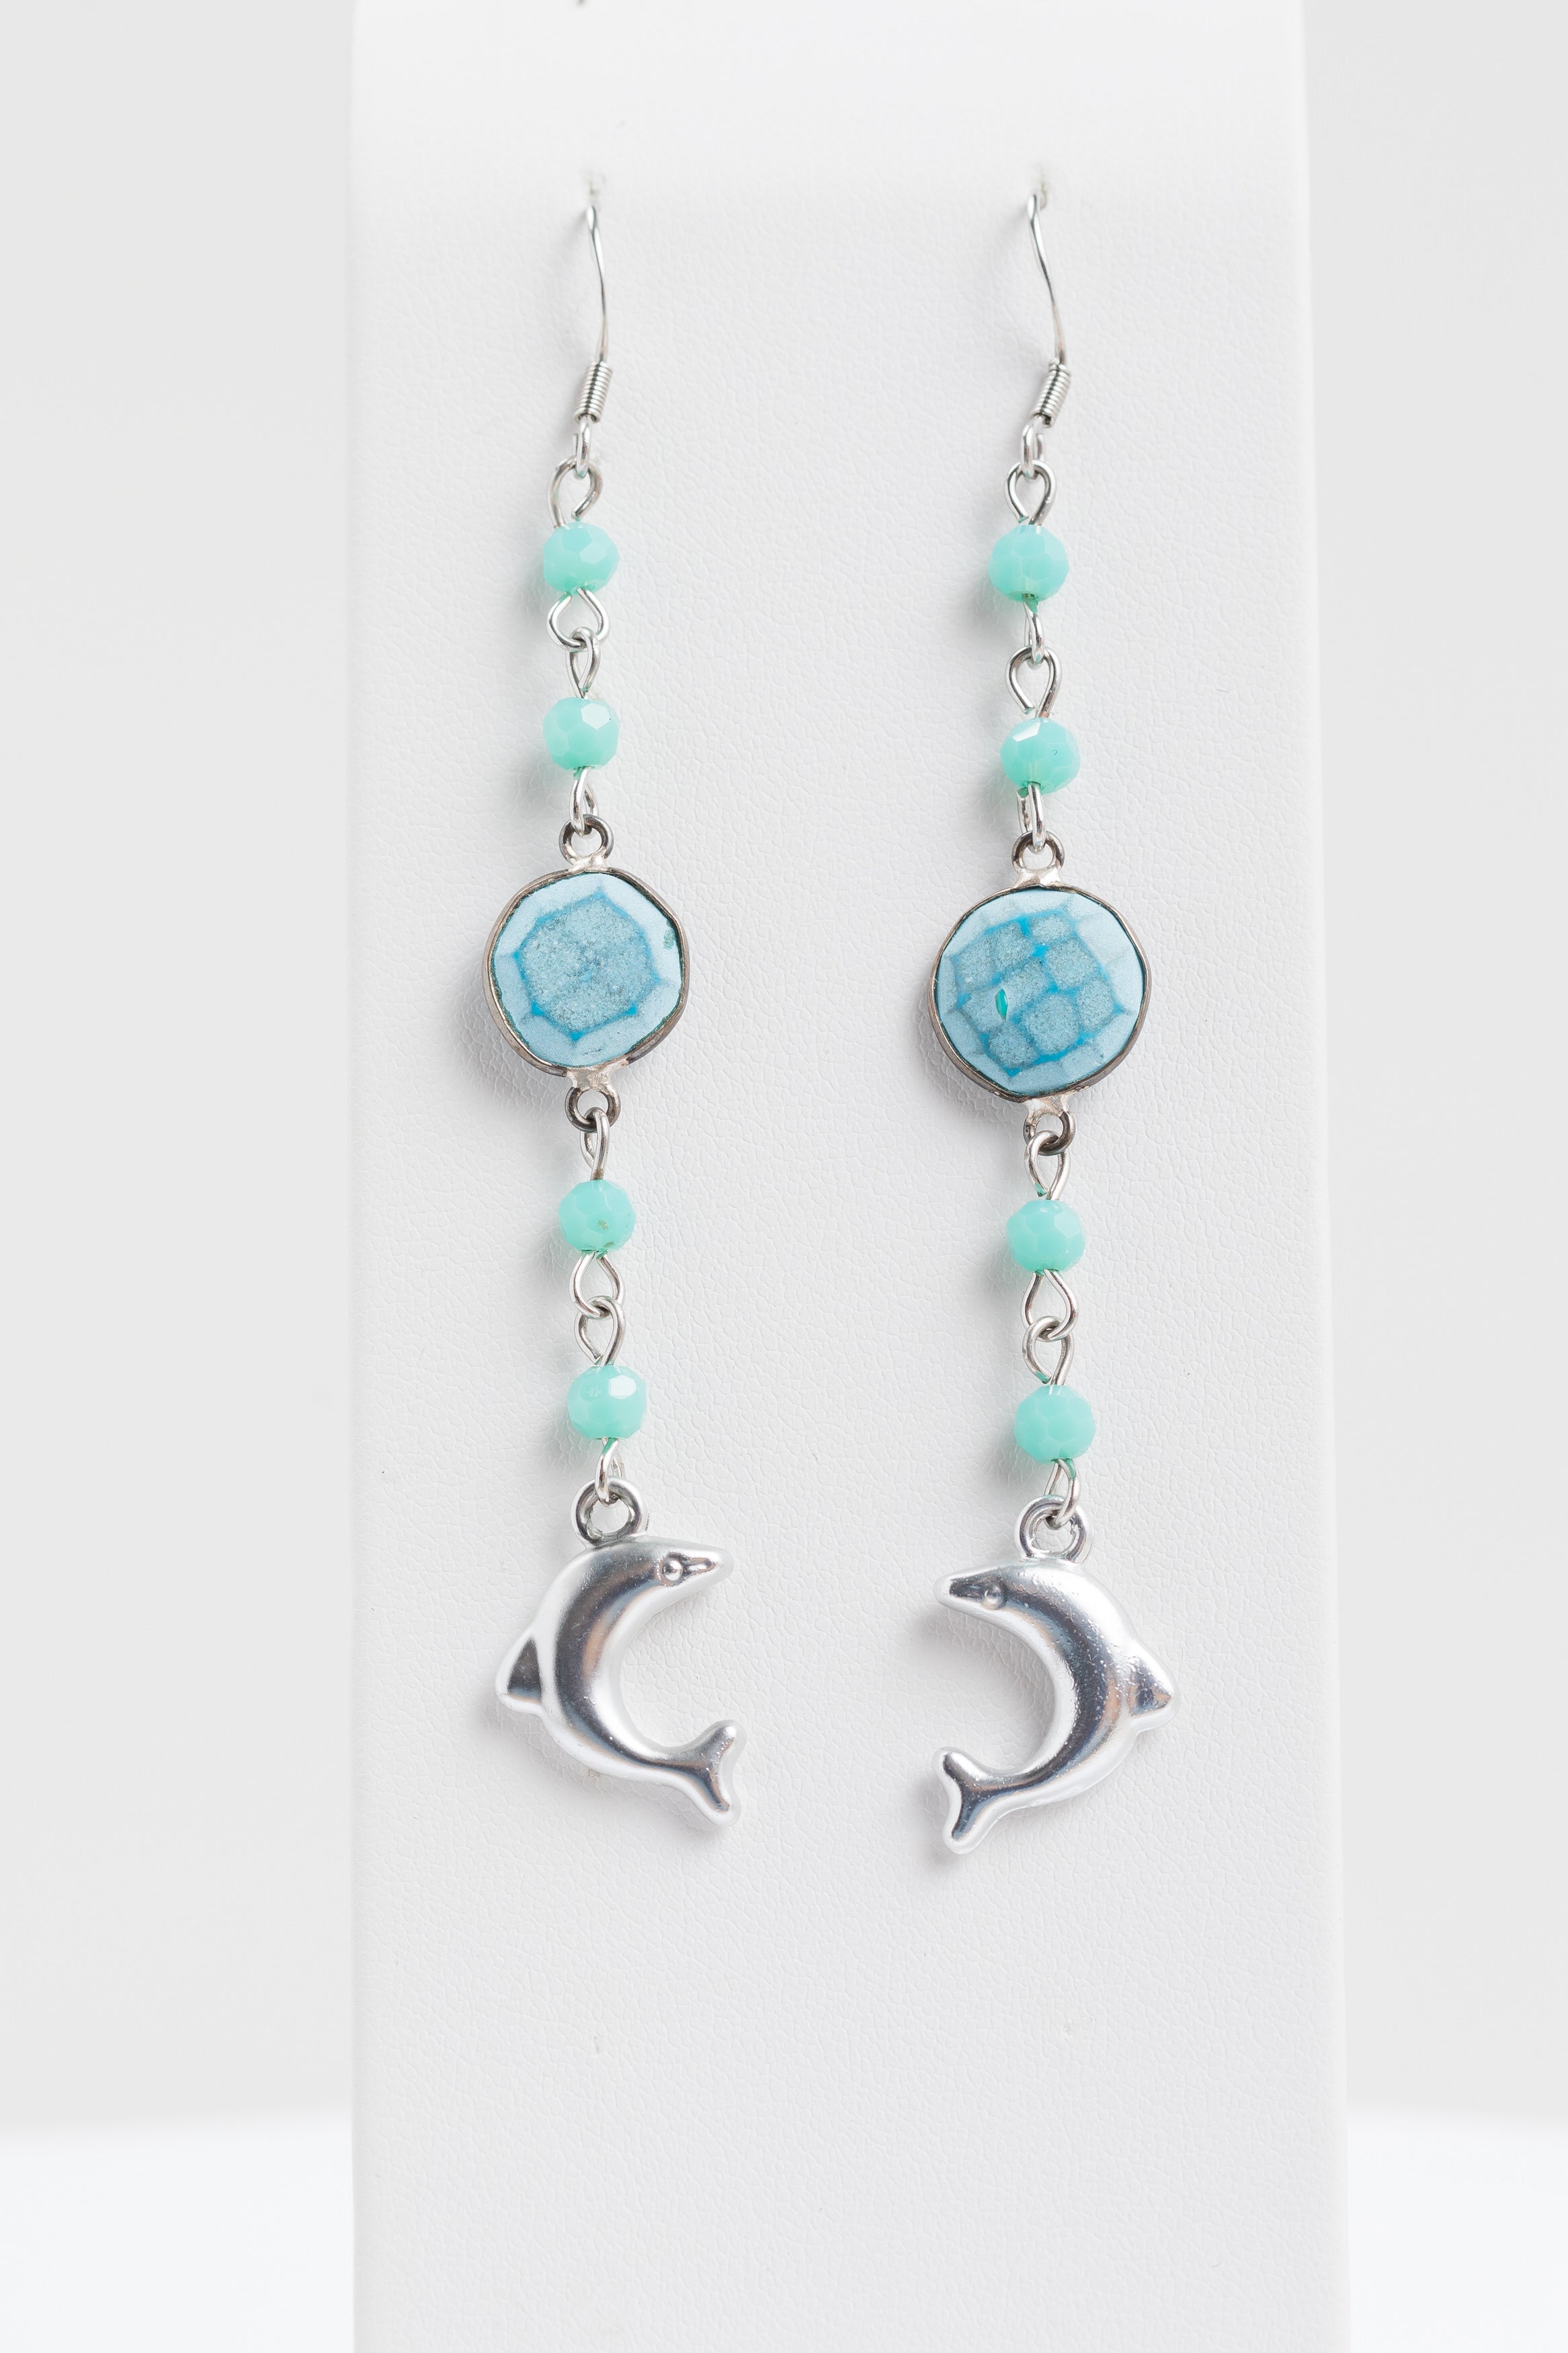 Larki Designs Silver Dolphin & Blue Stone Earrings